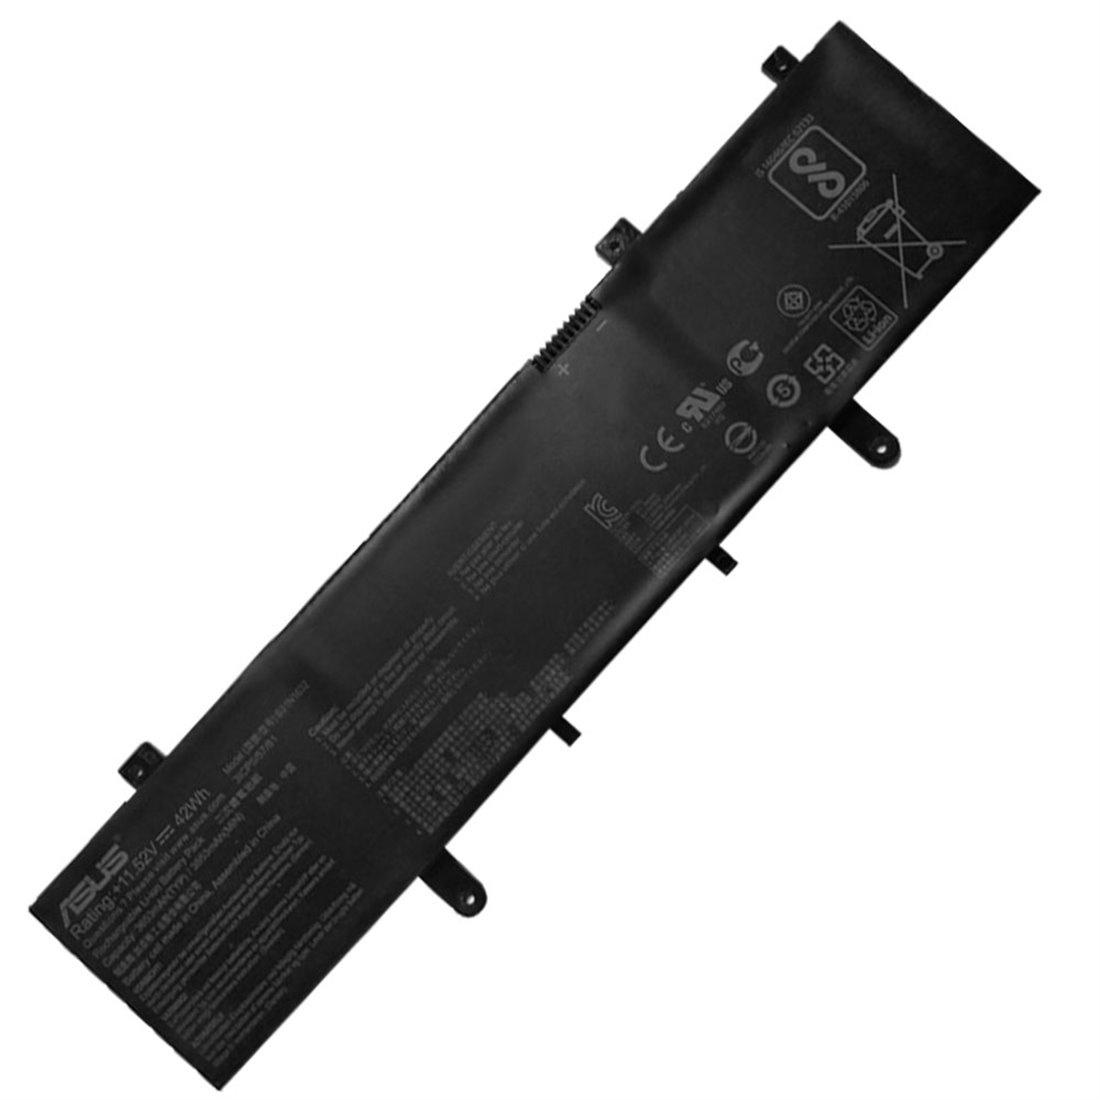 Batterie originale Asus B31N1632 0B200-02540000 0B200-02540300 11.55V 3727mAh, 42Wh pour ordinateur portable Asus S405UA-BM348T, S405UR-BM036T séries